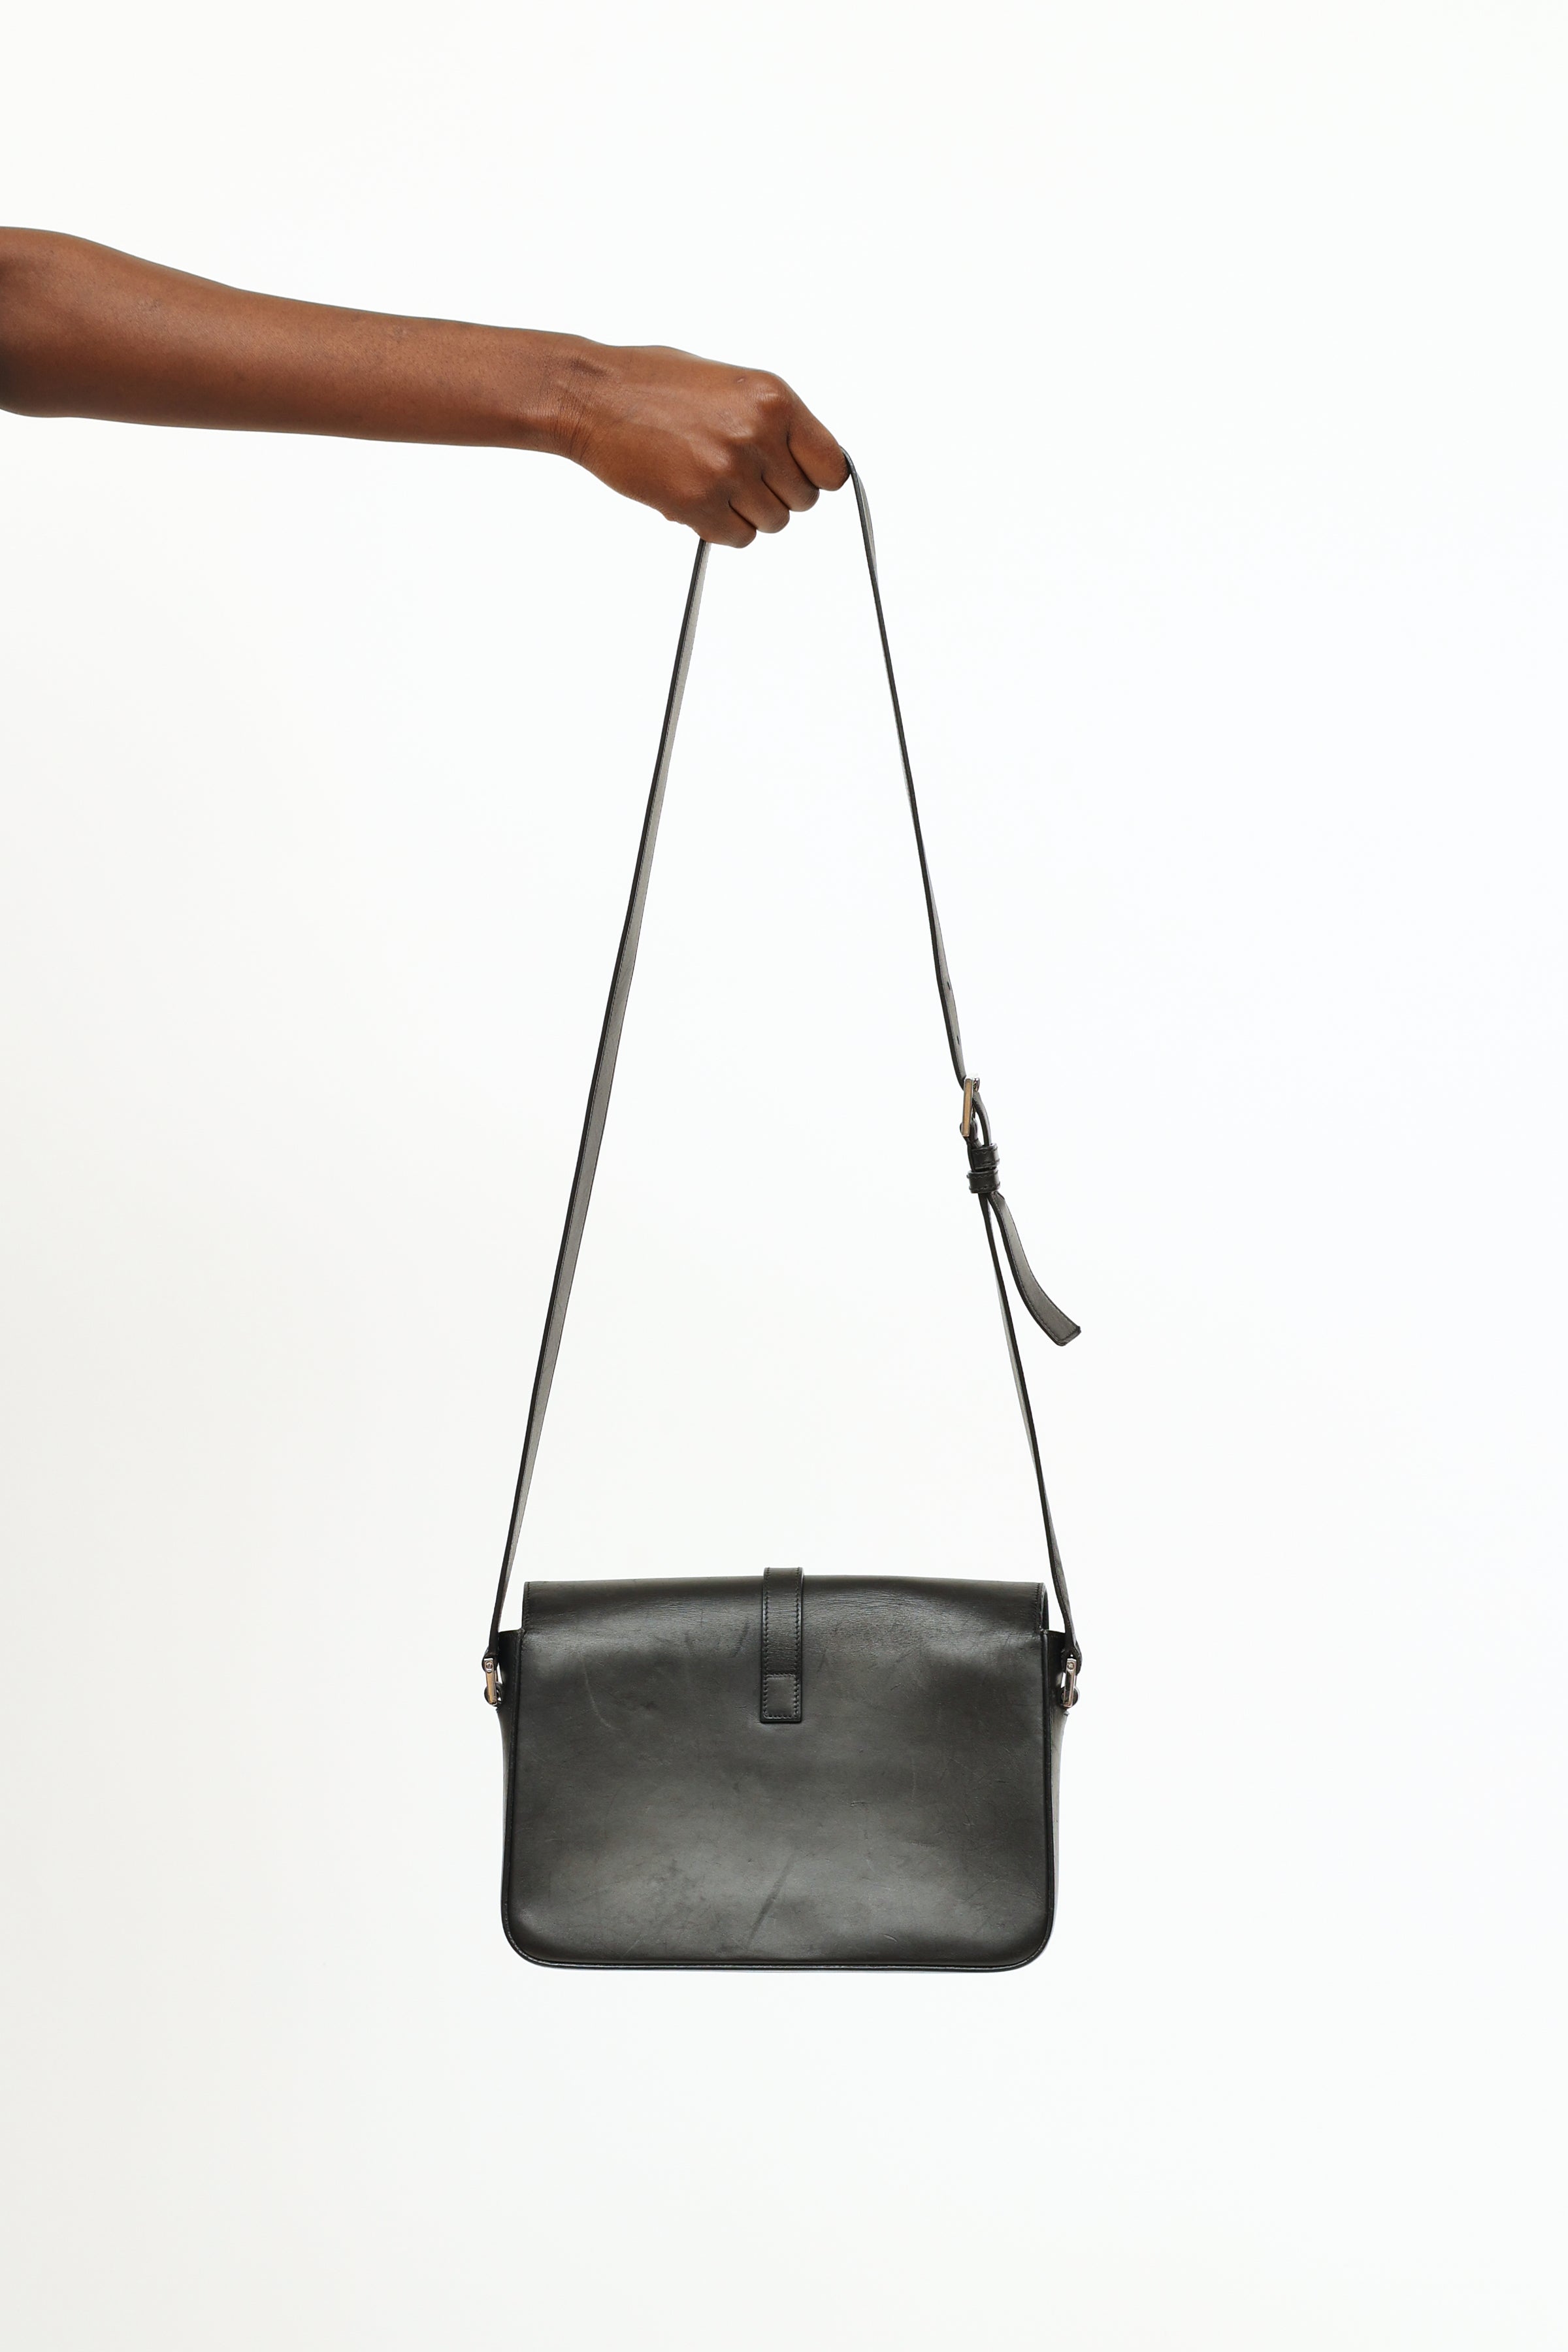 YSL Black College Large Quilted Leather V-Flap Shoulder Bag - A World Of  Goods For You, LLC